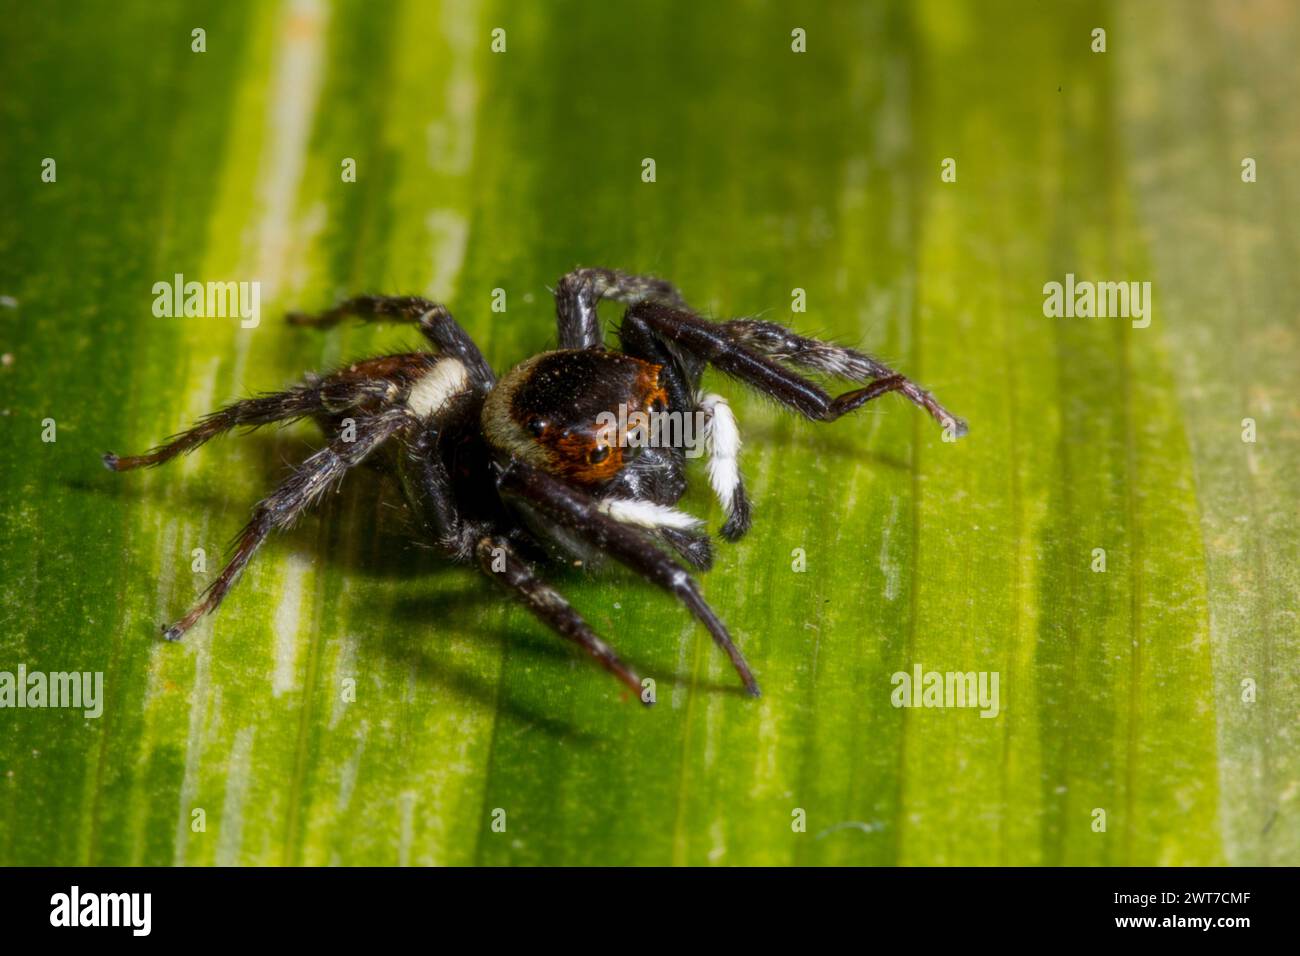 Saltador de casa de Adanson saltando araña (Hasarius adansoni) macho adulto en una hoja. Se encuentra en un centro de jardín. Carrmarthenshire, Gales. Noviembre. Foto de stock